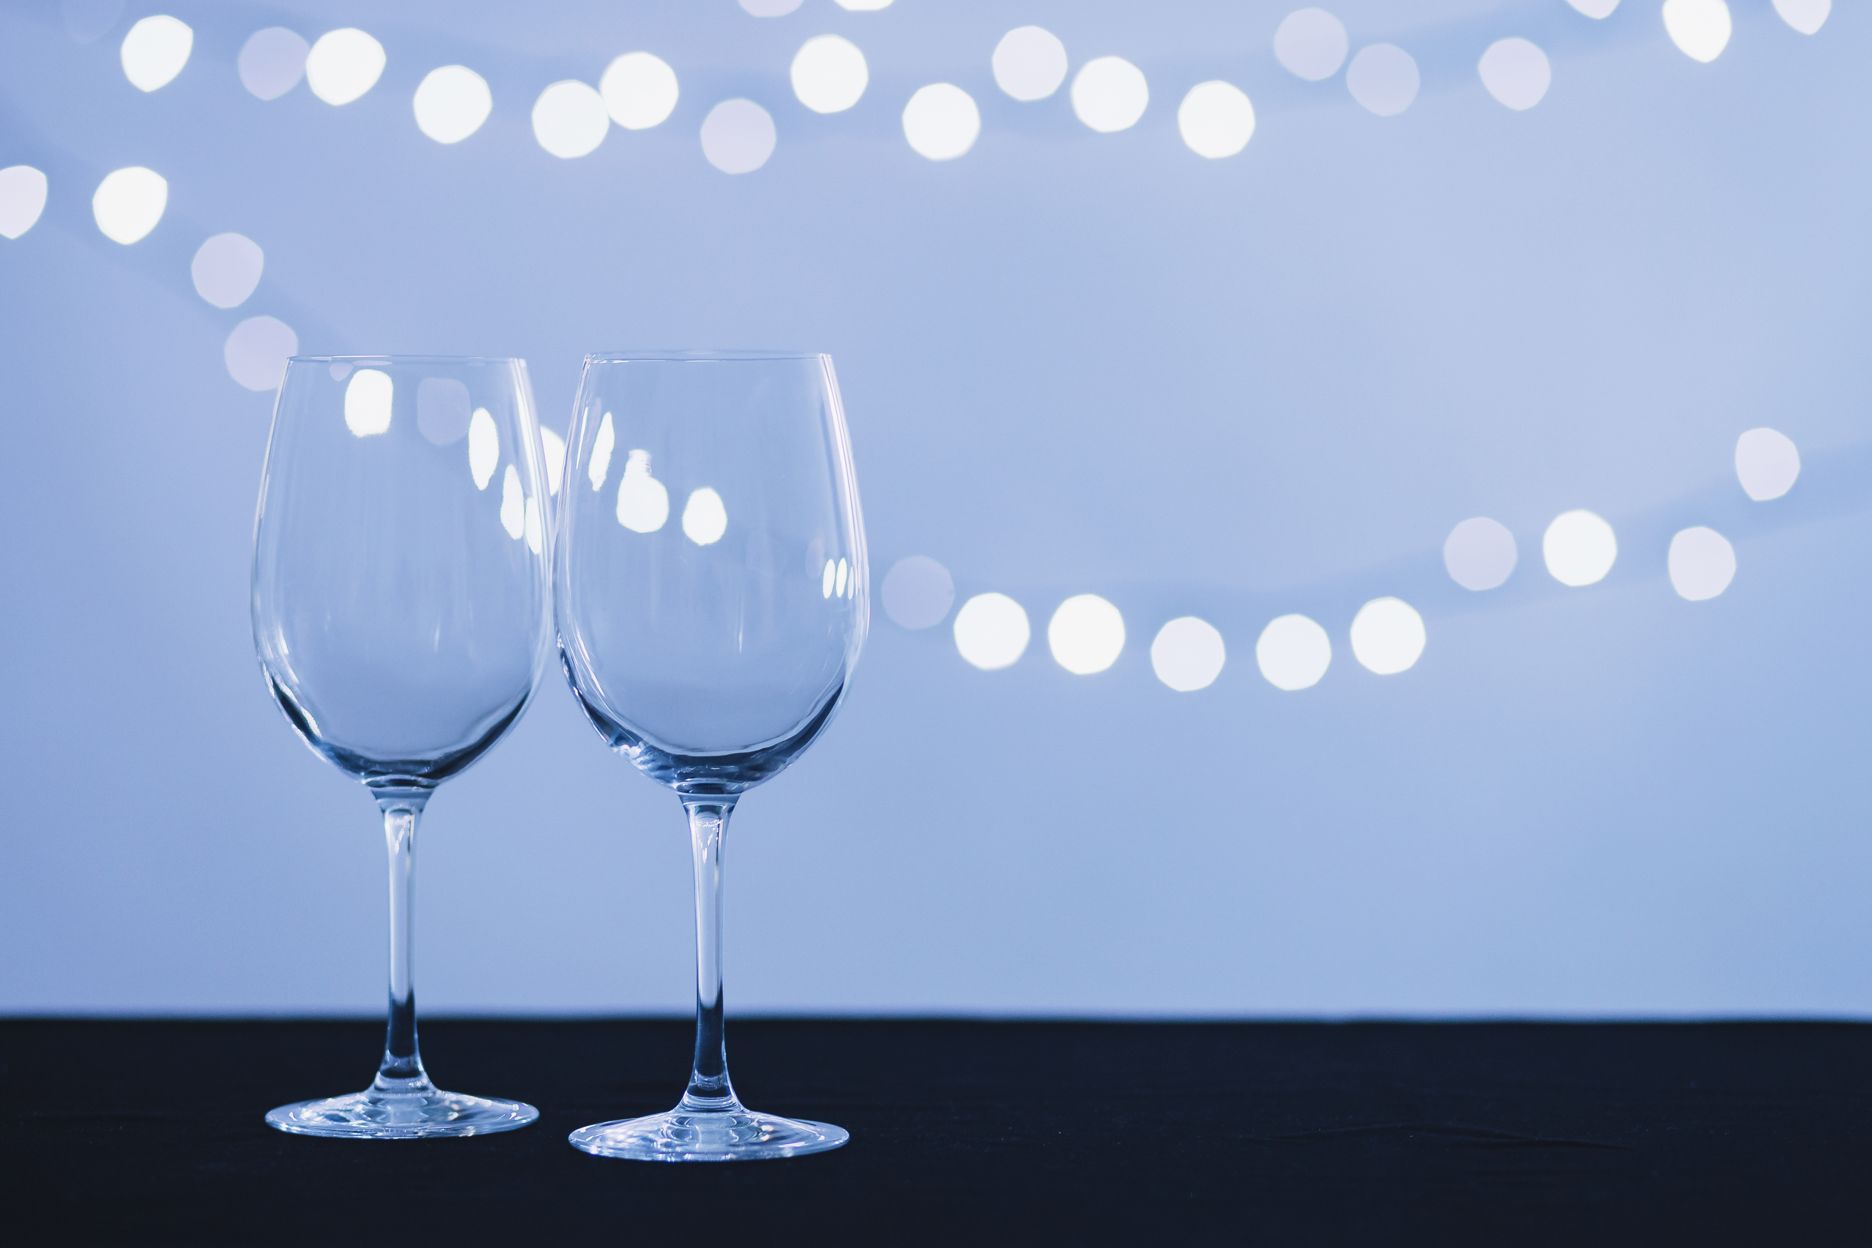 wineglasses-fairy-lights.jpg